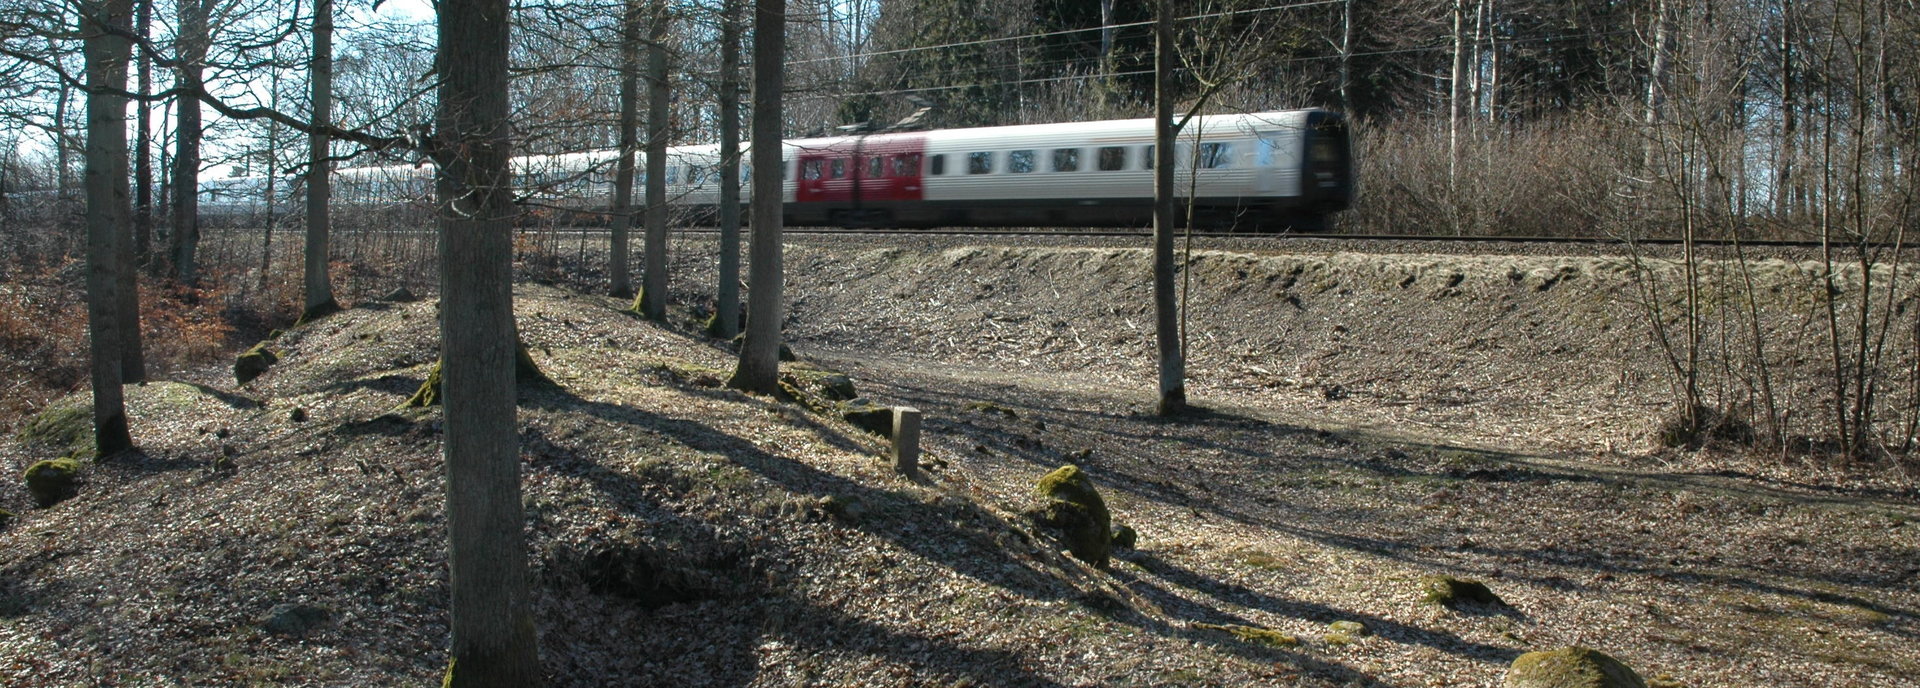 Foto af Jættestue i skov tæt ved jernbanen, mens IC3 tog kører forbi i baggrunden